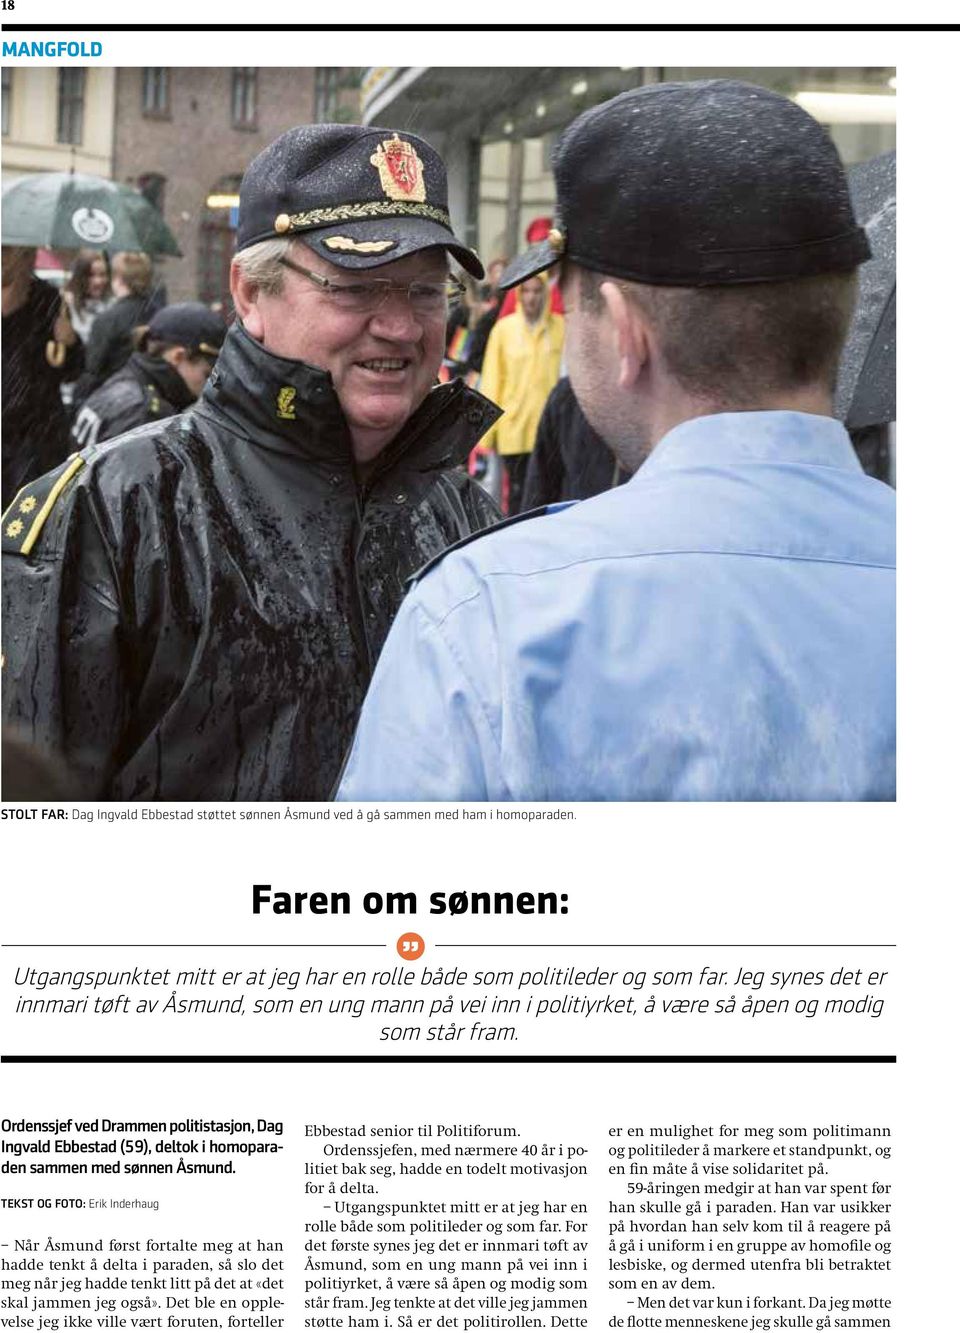 Ordenssjef ved Drammen politistasjon, Dag Ingvald Ebbestad (59), deltok i homoparaden sammen med sønnen Åsmund.